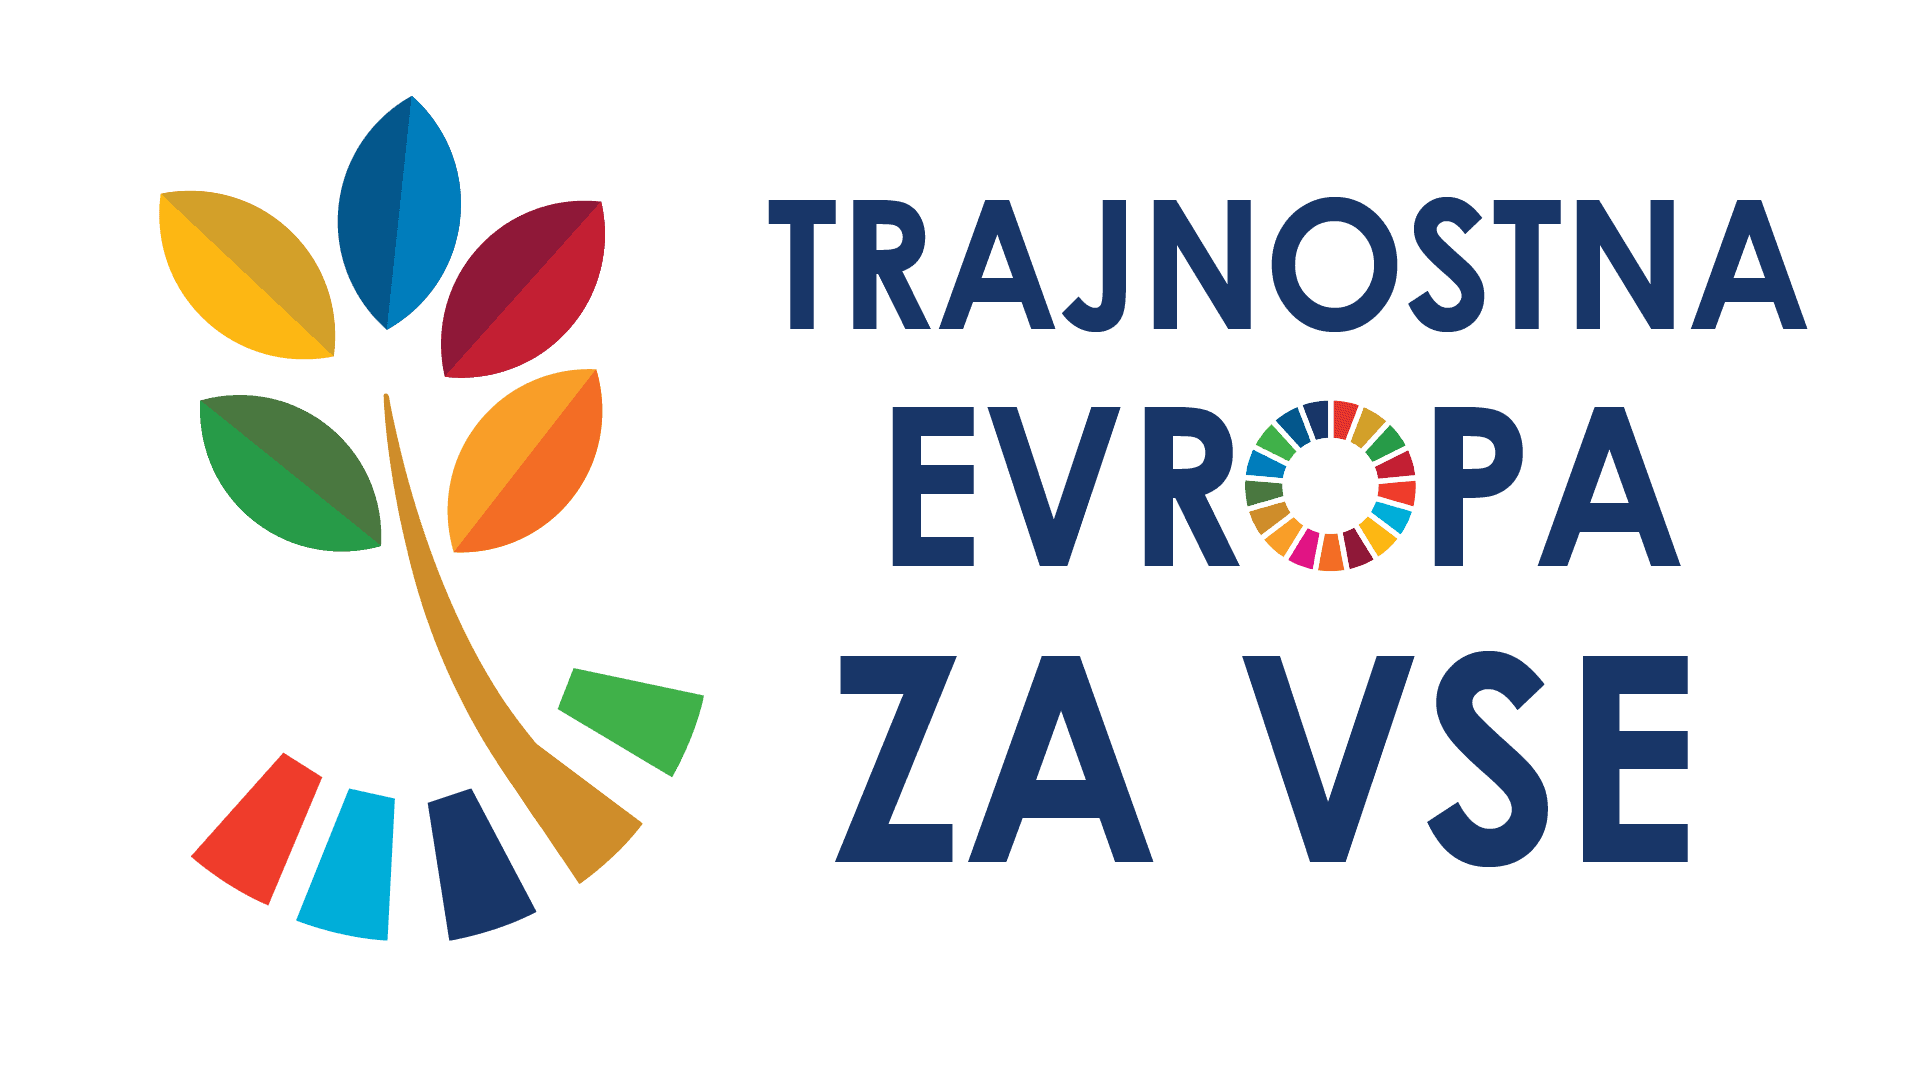 Slovenske organizacije uspešne ne razpisu Trajnostna Evropa za vse